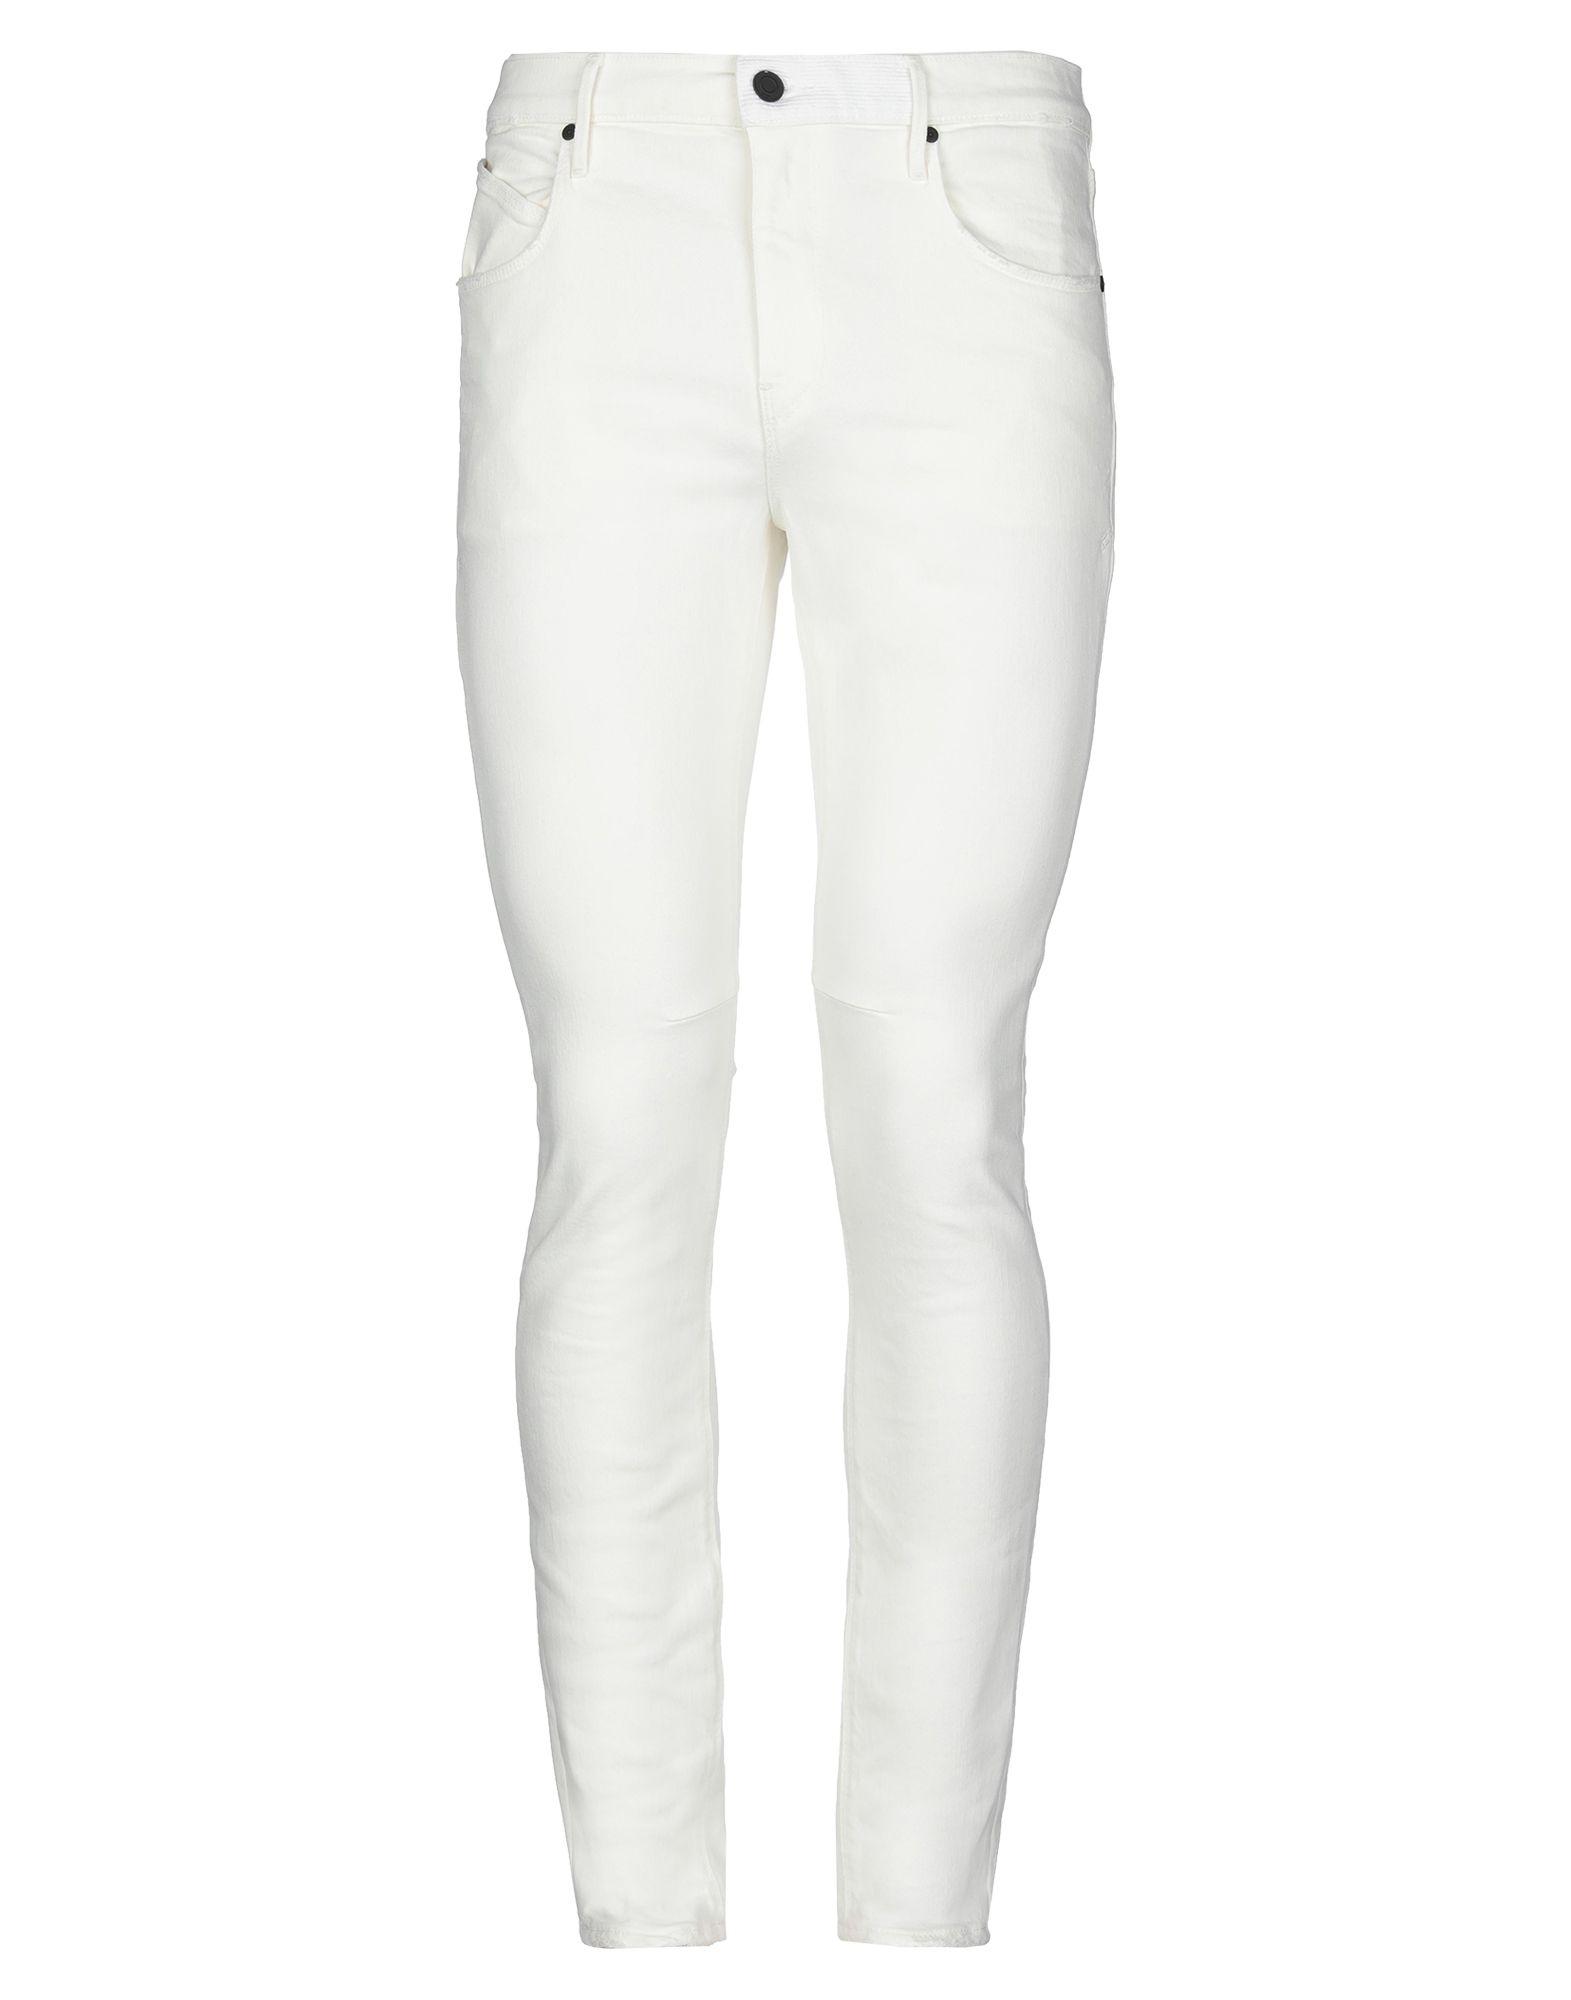 RTA Denim Pants in Ivory (White) for Men - Lyst